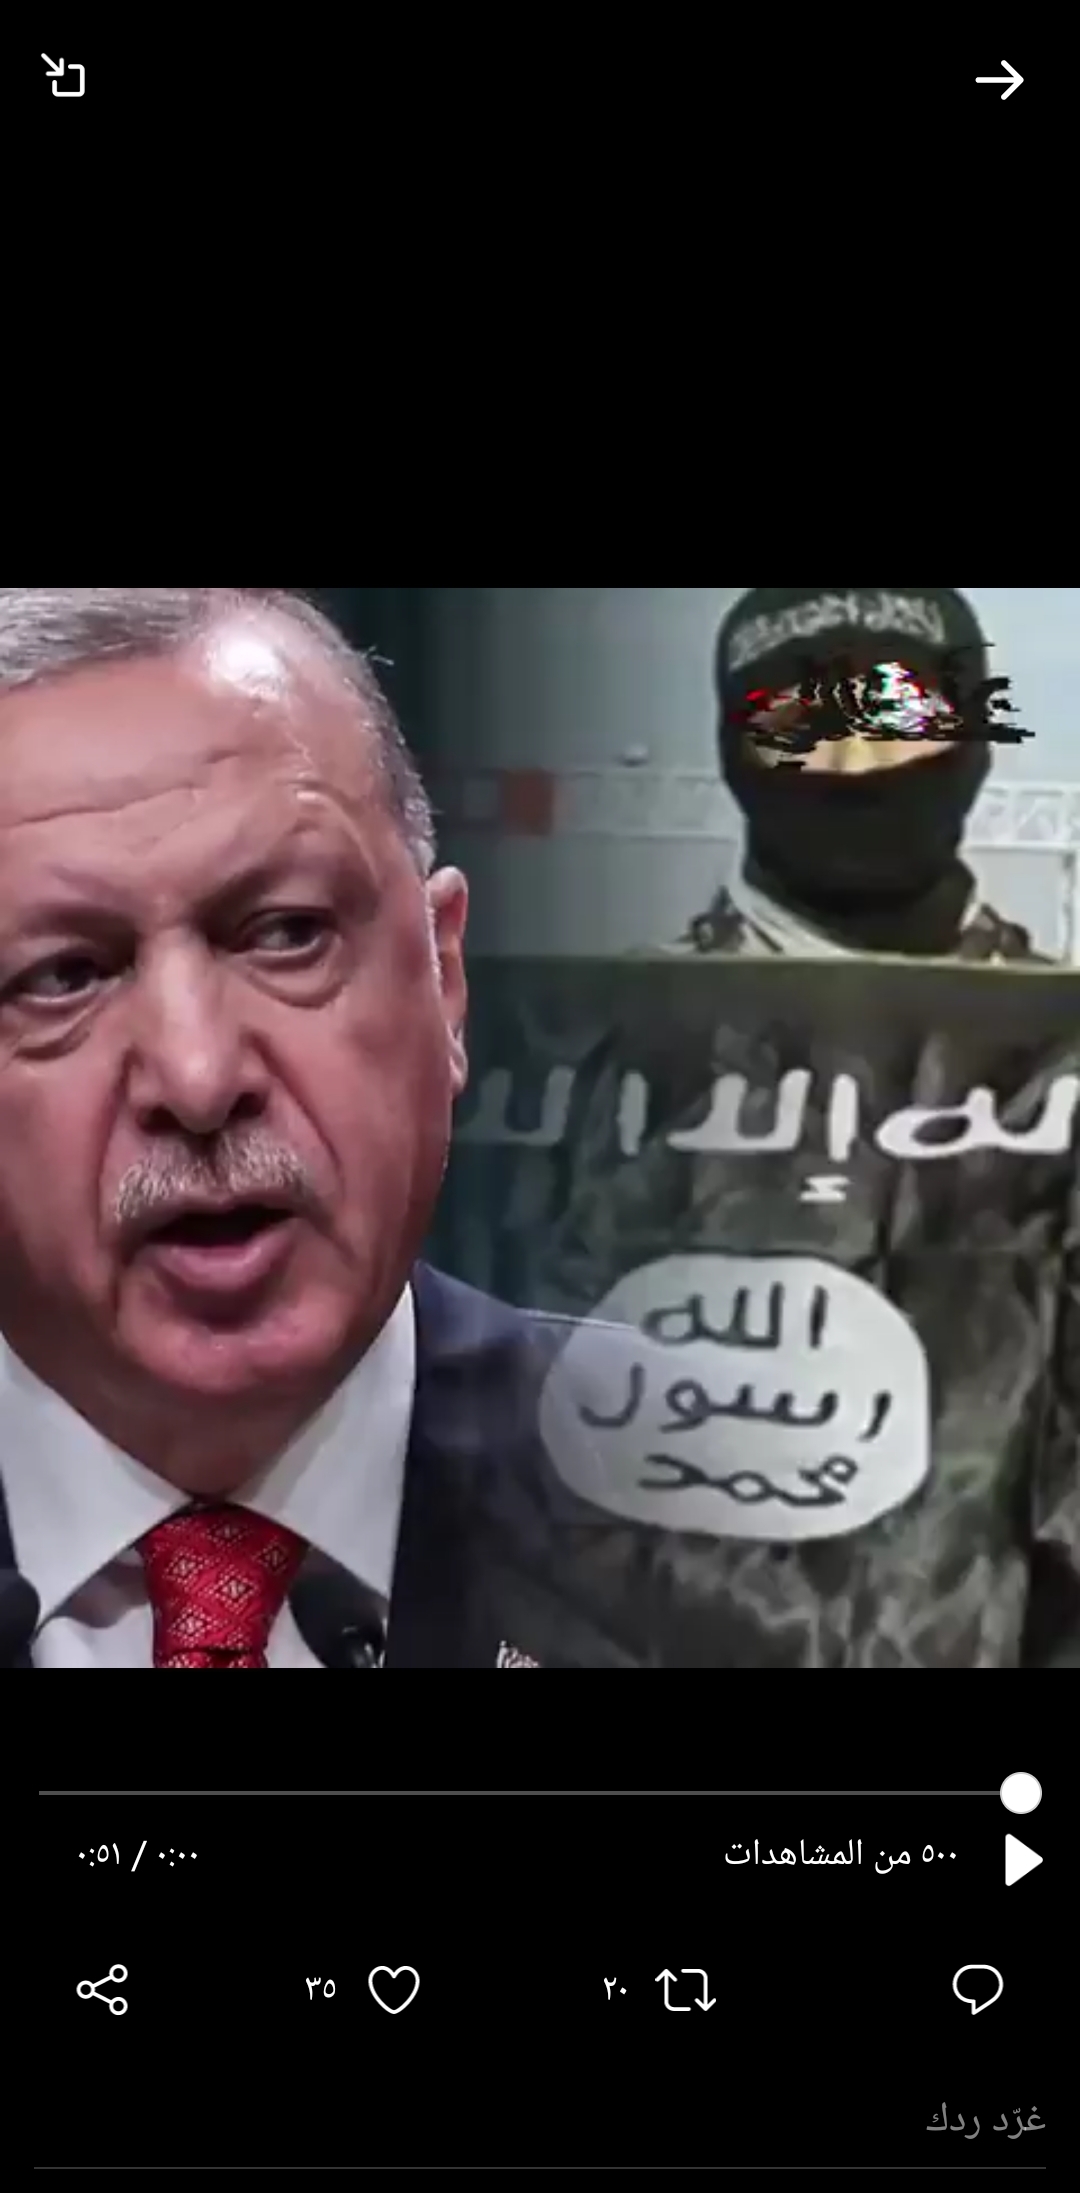 ‏‎#أردوغان والتنظيمات الإرهابية.. وثائق أممية تكشف خبايا ‎#الإرهاب التركي  ‎#عثمانلي ‎#تركيا